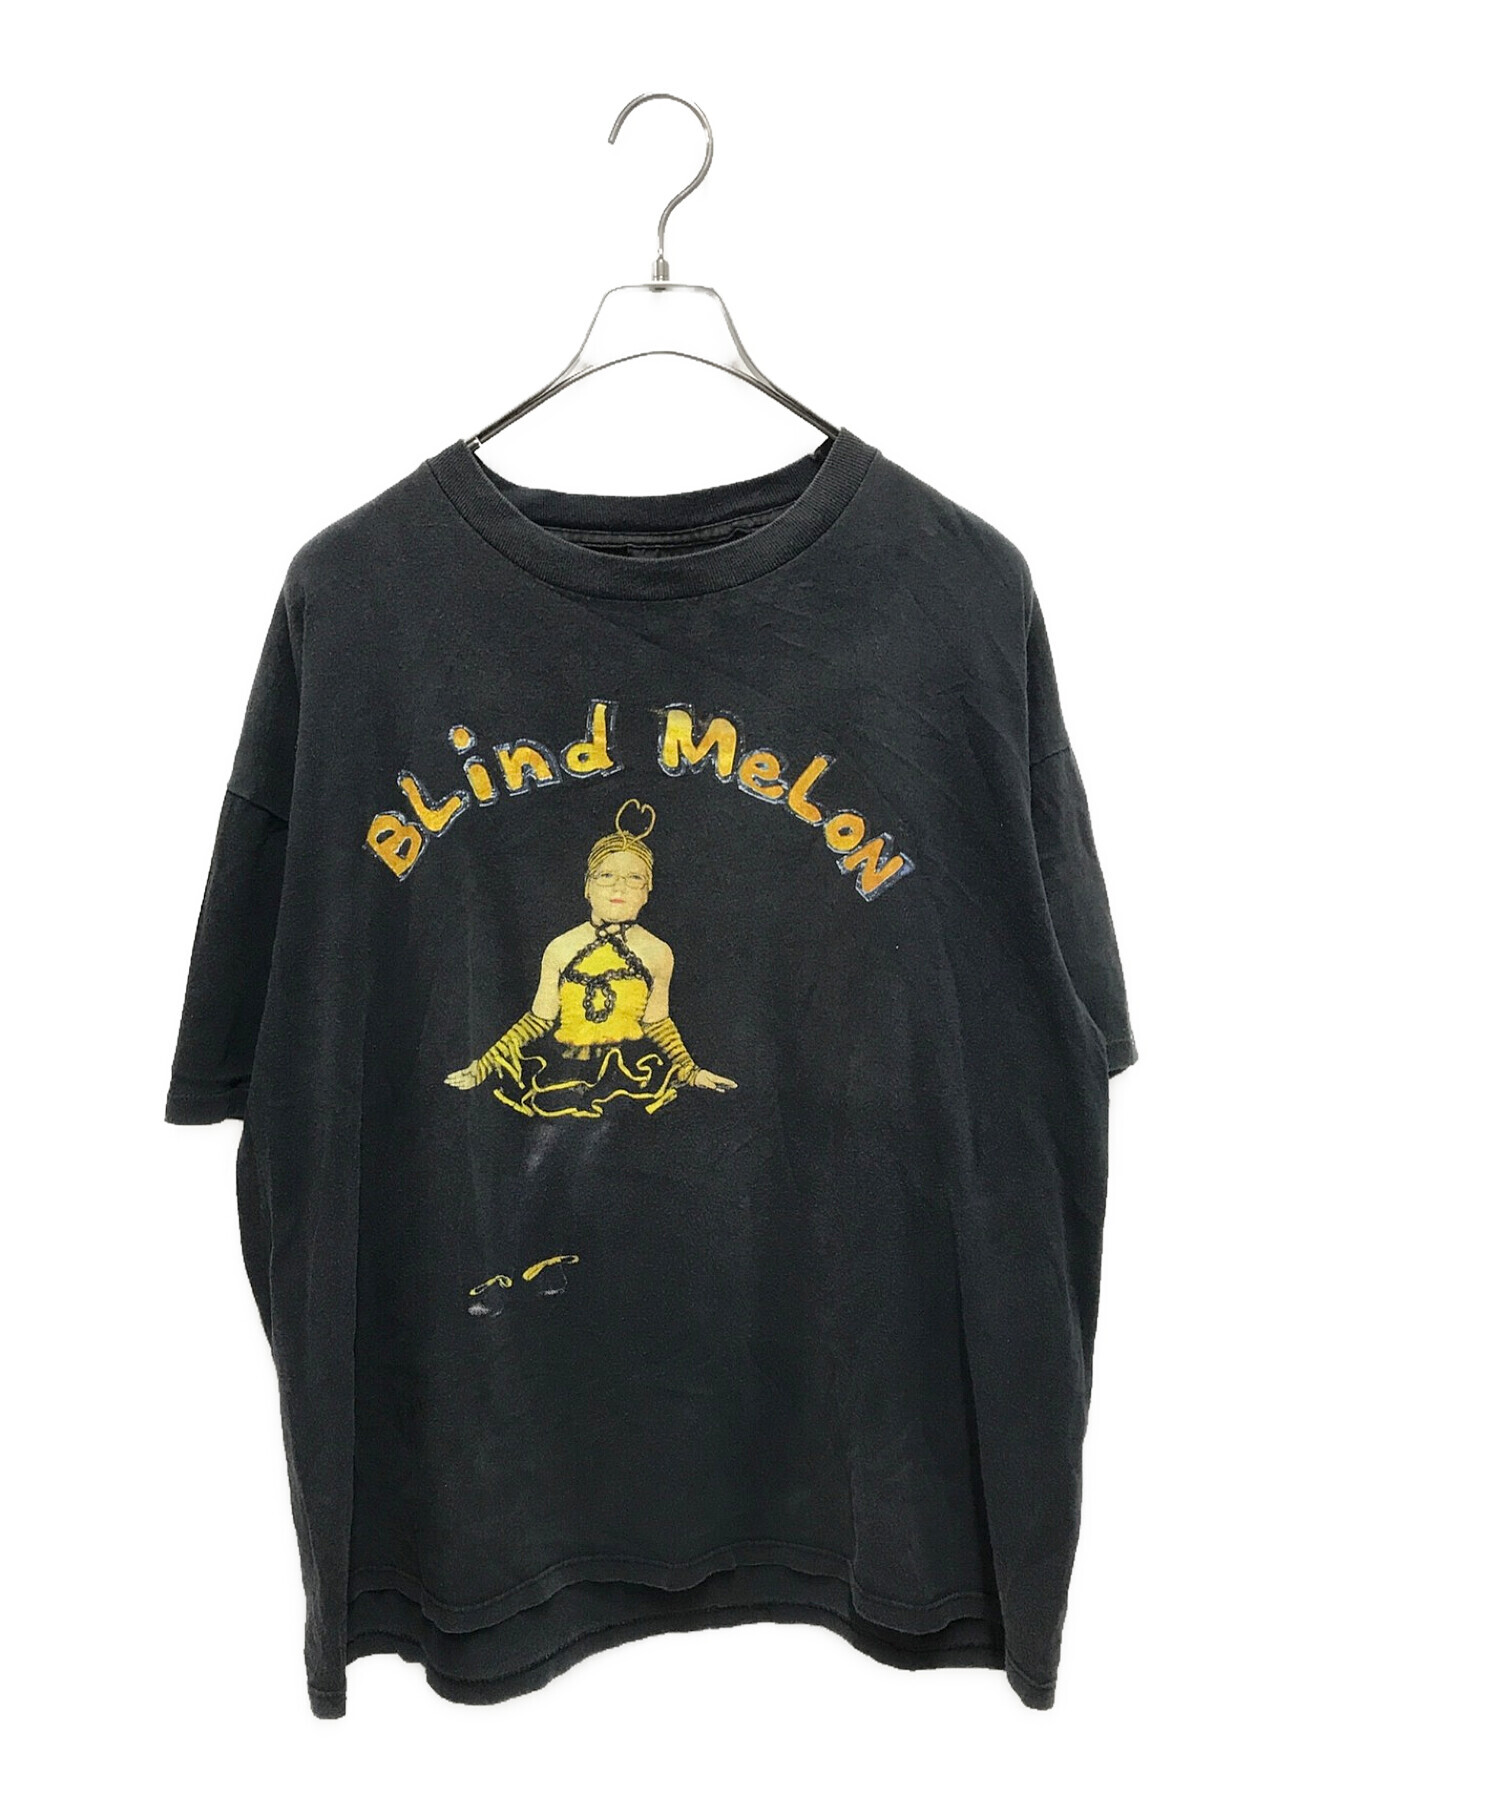 BLIND MELON (ブラインドメロン) 90‘SヴィンテージツアーバンドTEE ブラック サイズ:XL